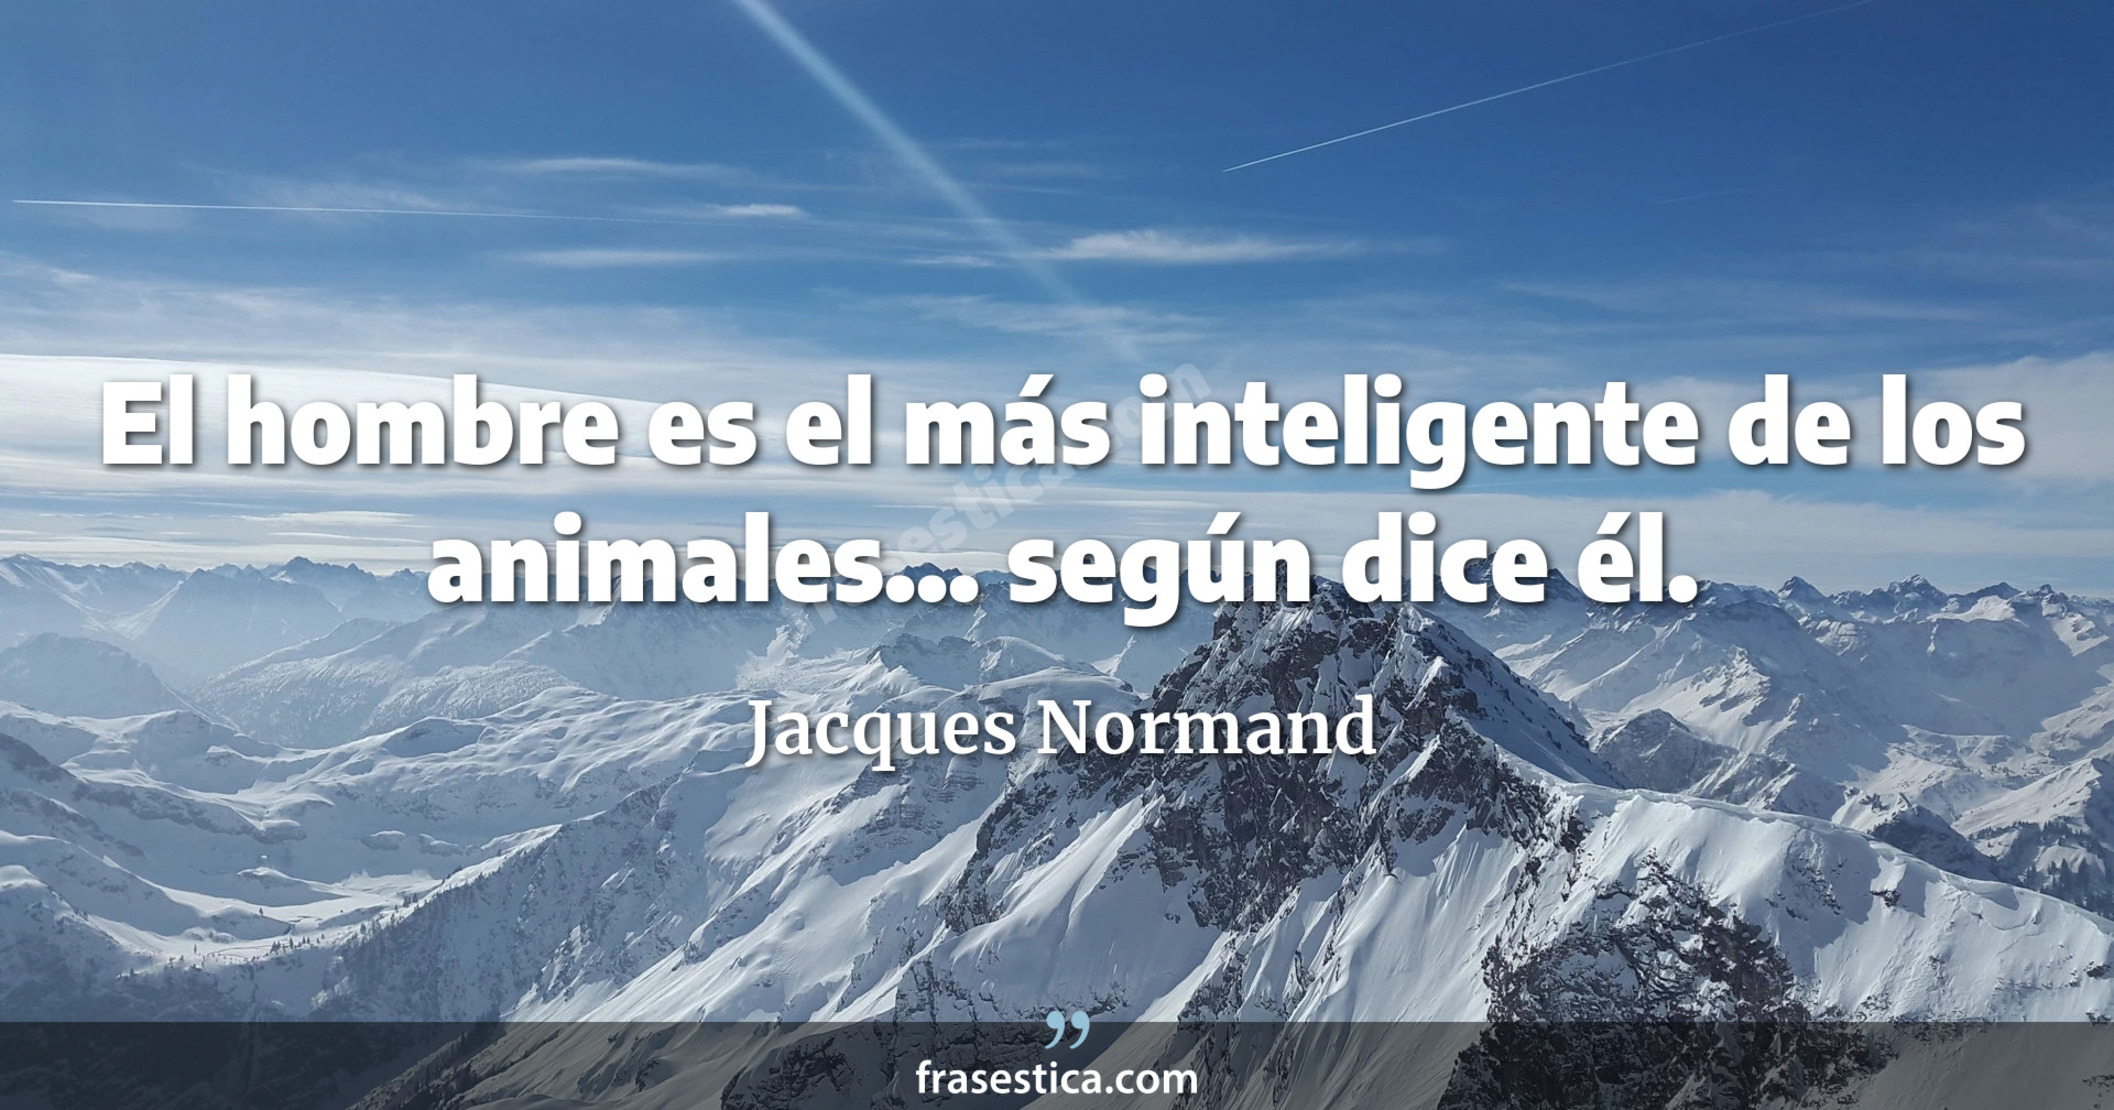 El hombre es el más inteligente de los animales... según dice él. - Jacques Normand